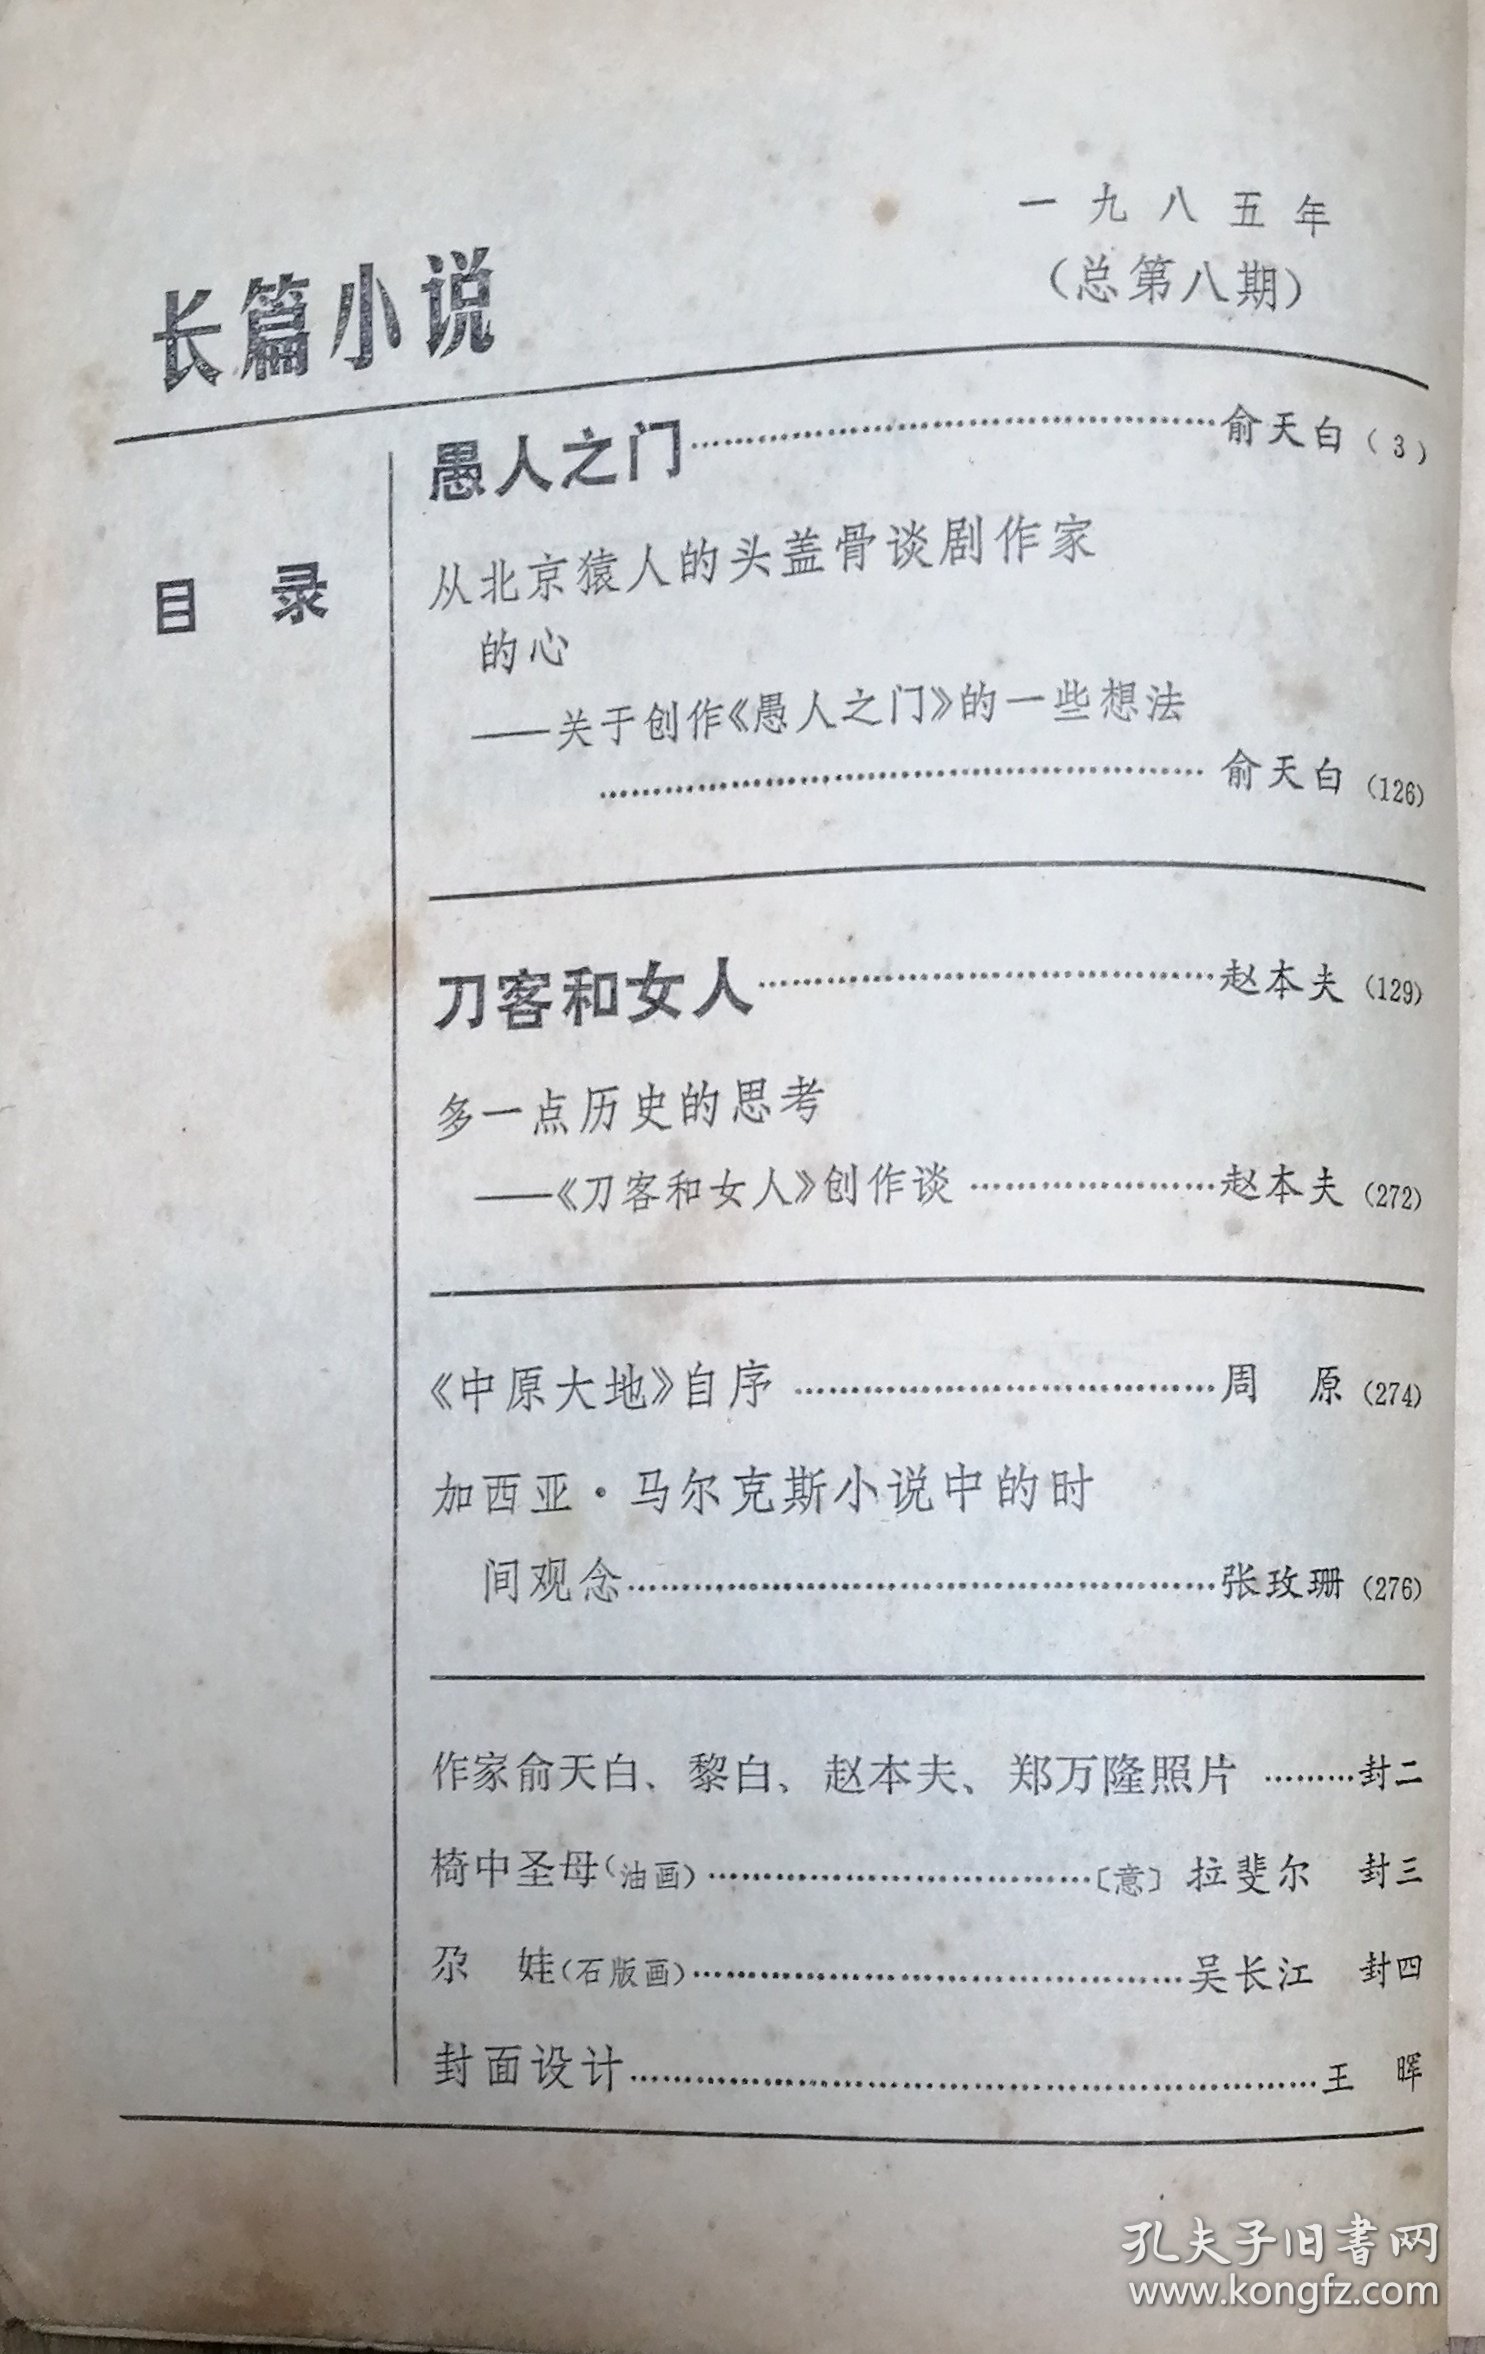 《十月》专刊：《长篇小说》第1985年总第8期（俞天白长篇《愚人之门》》 赵本夫长篇 《刀客和女人》）